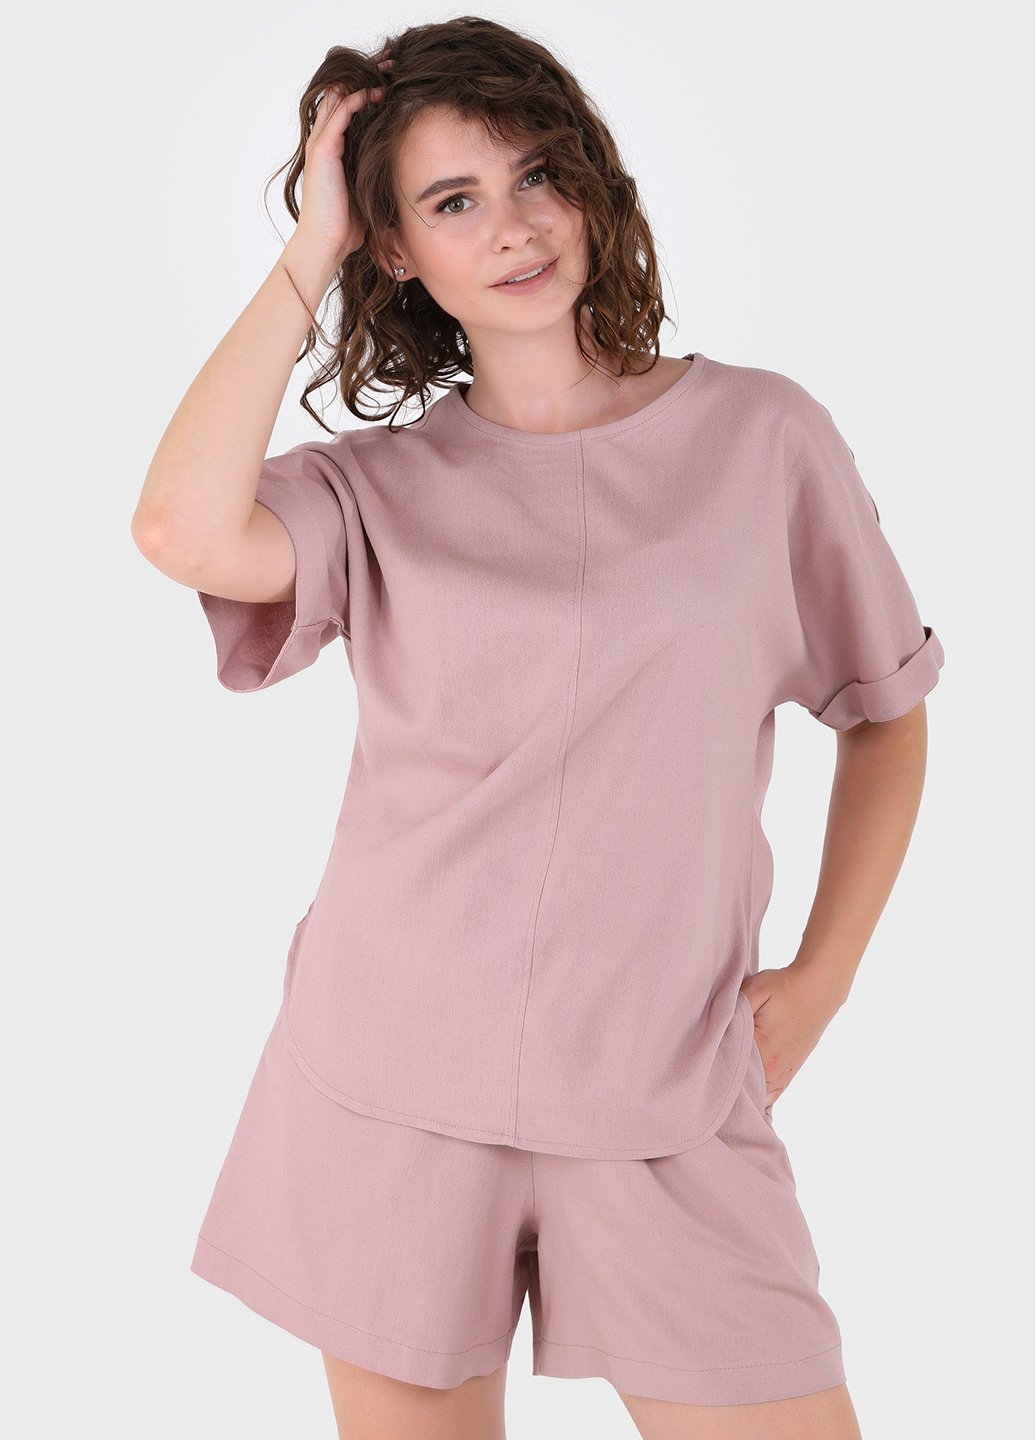 Купить Оверсайз льняная футболка женская пудрового цвета Merlini Лацио 800000036, размер 42-44 в интернет-магазине